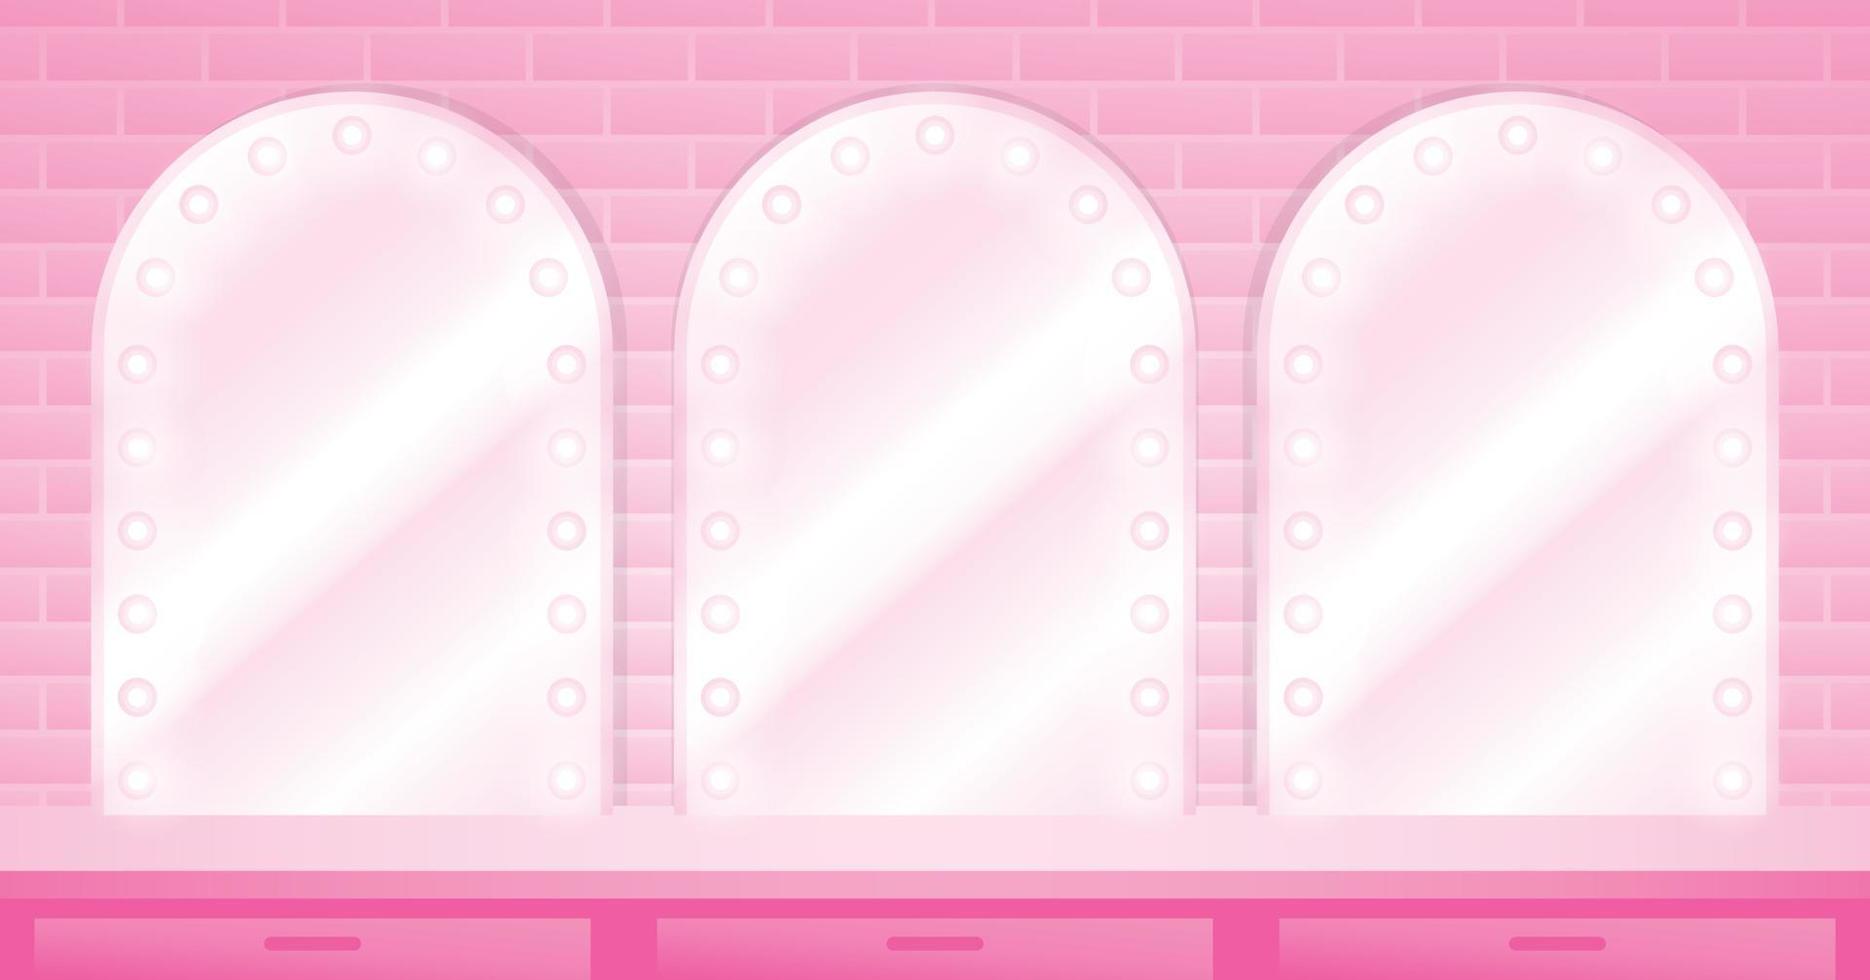 söt rosa pastell sminkbord bakgrund 3d illustration vektor består av glödlampa speglar och bordsskiva för att sätta ditt objekt